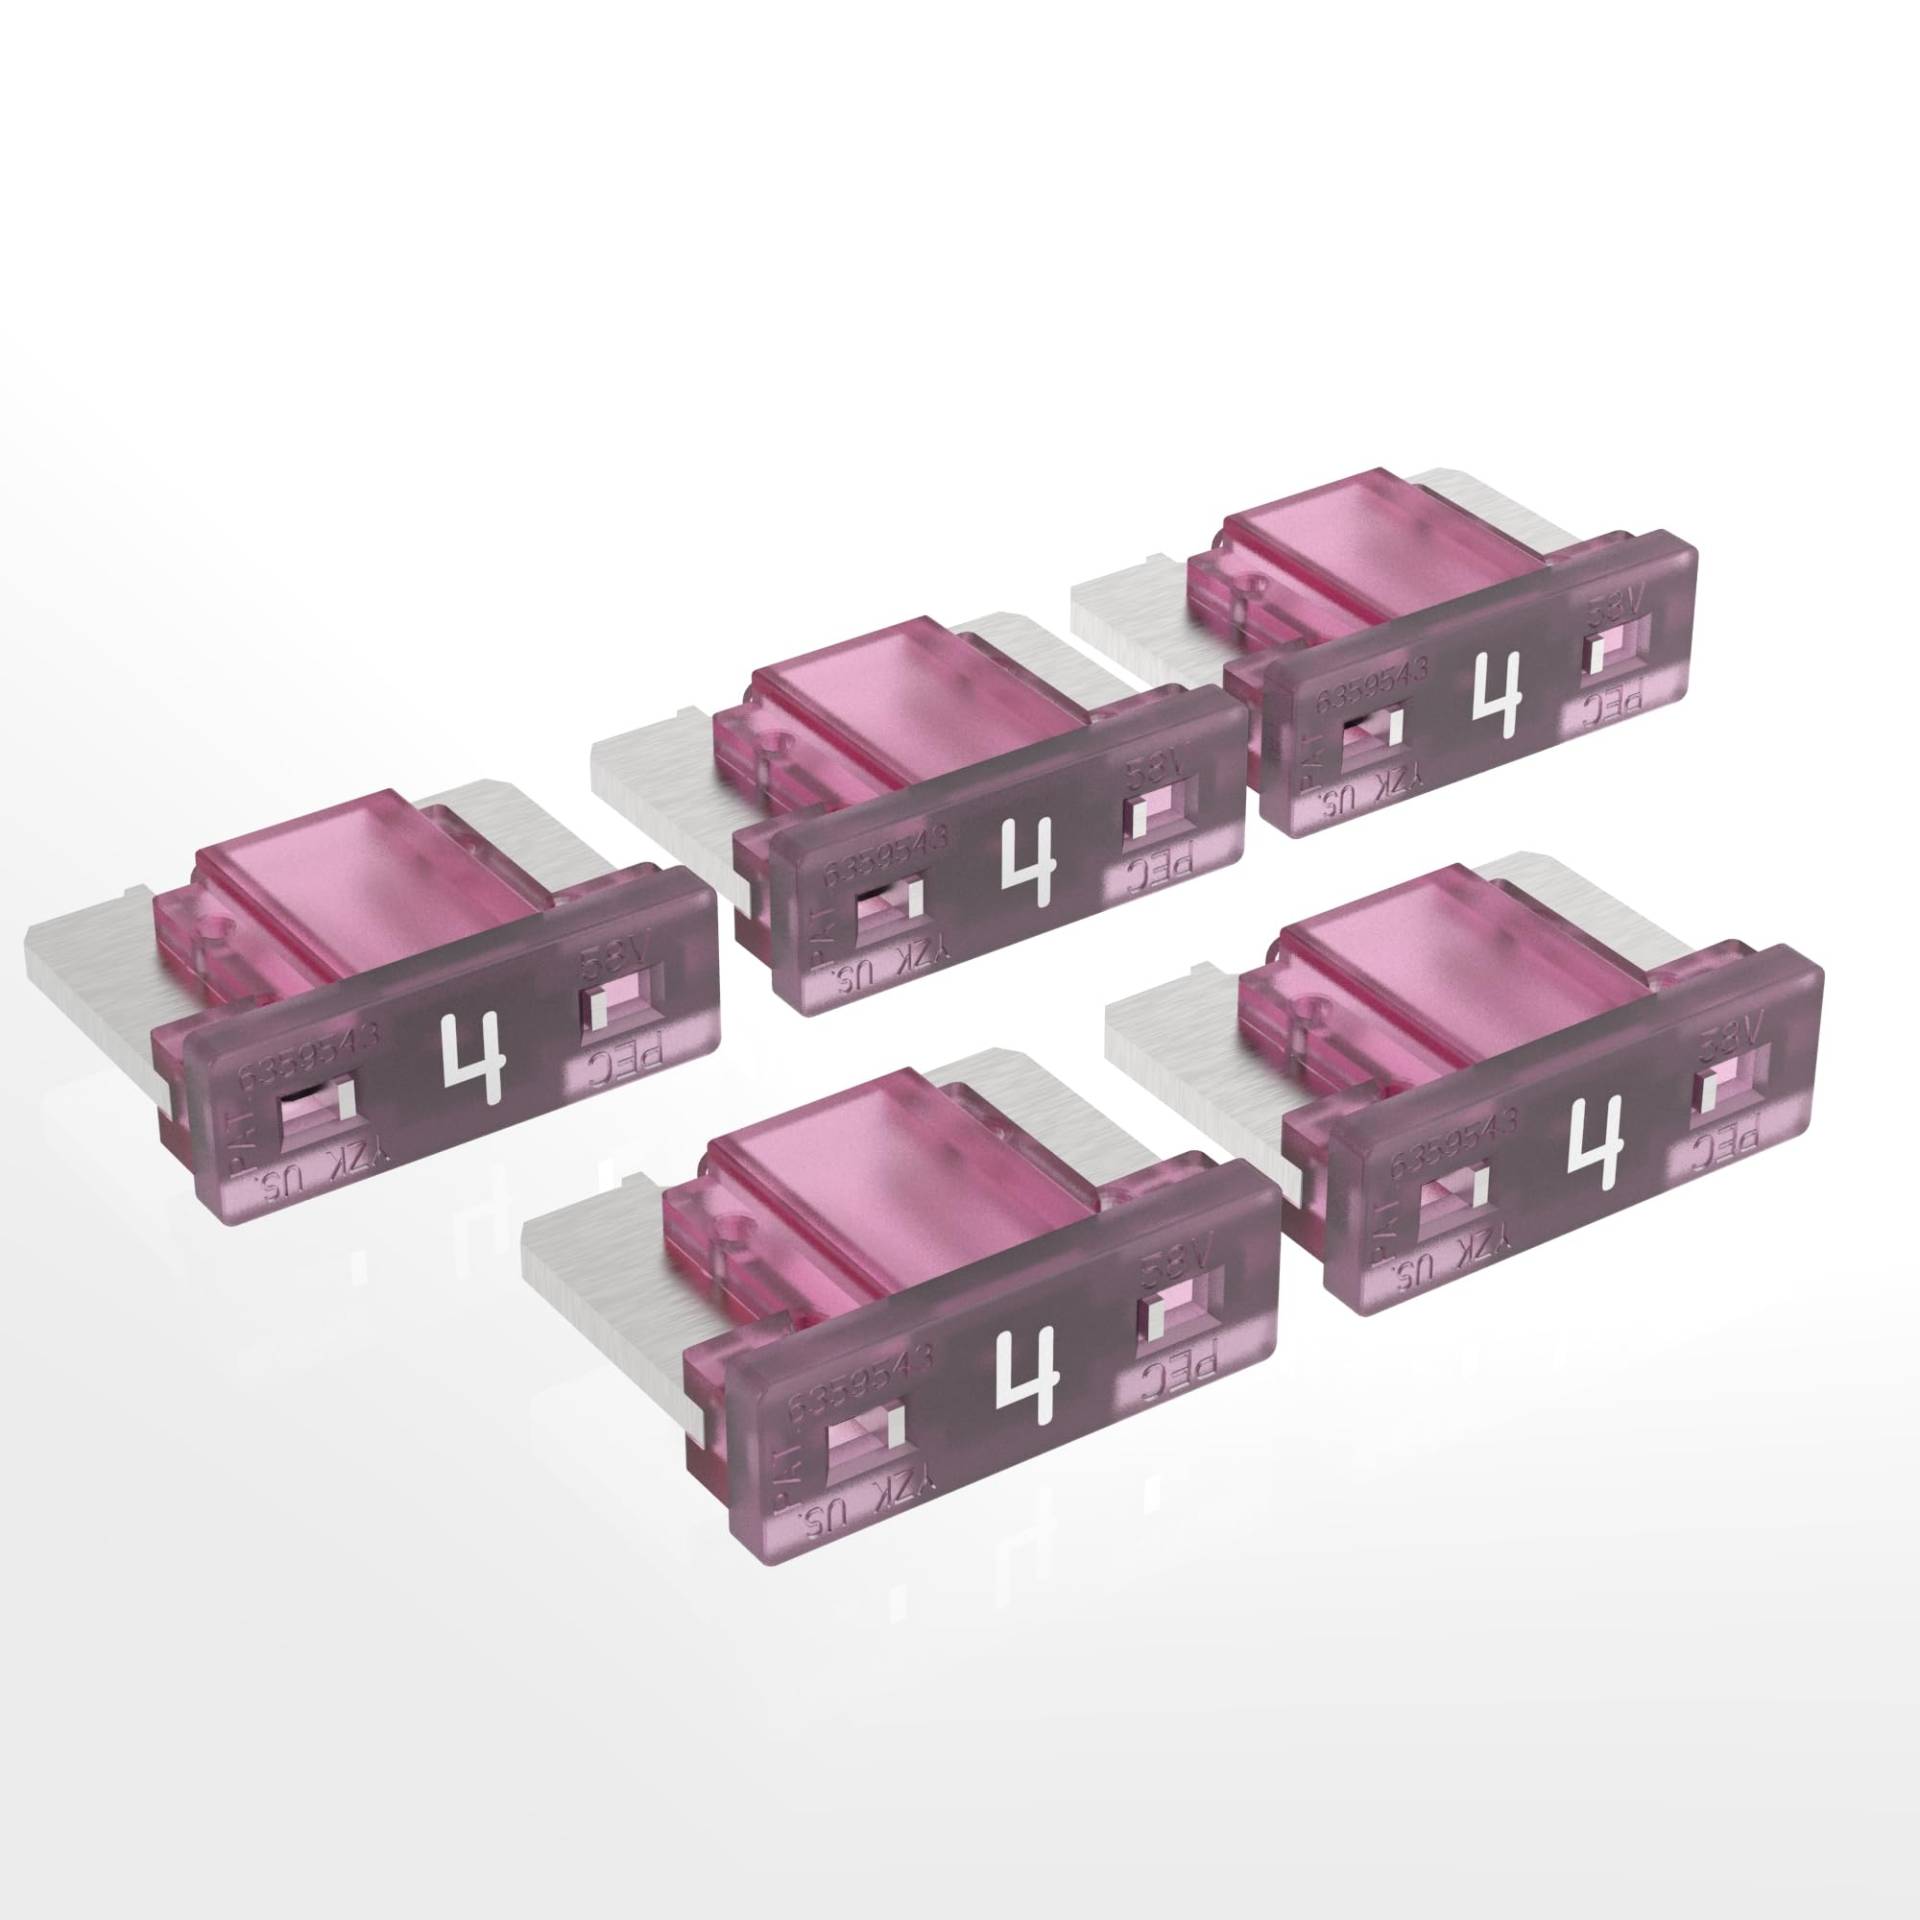 AUPROTEC Mini LP Kfz Sicherungen Flachstecksicherungen 2A - 30A Auswahl: 4A Ampere pink, 5 Stück von AUPROTEC